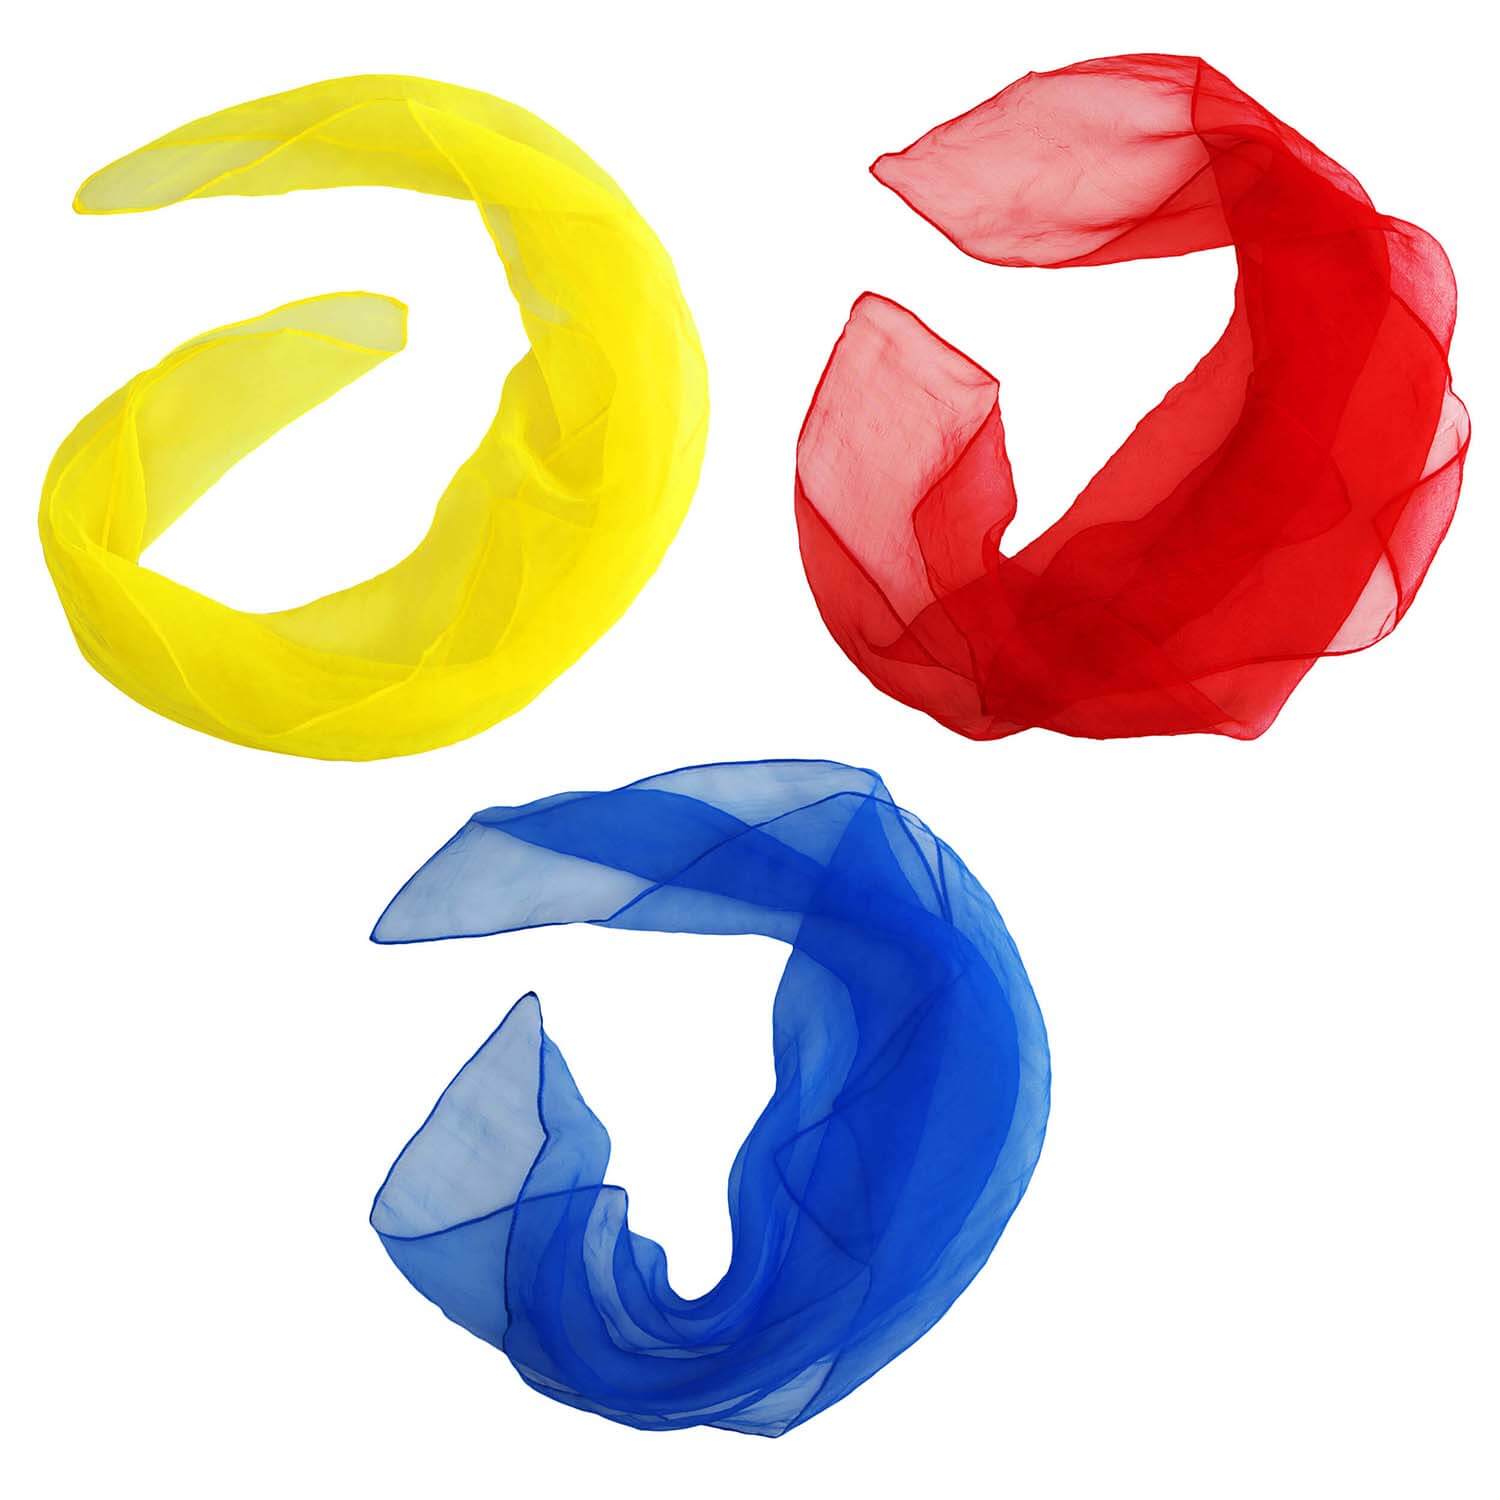 Bunte Diabolo Freizeitsport Jongliertücher 3 Stück in Rot, Gelb, Blau kaufen!